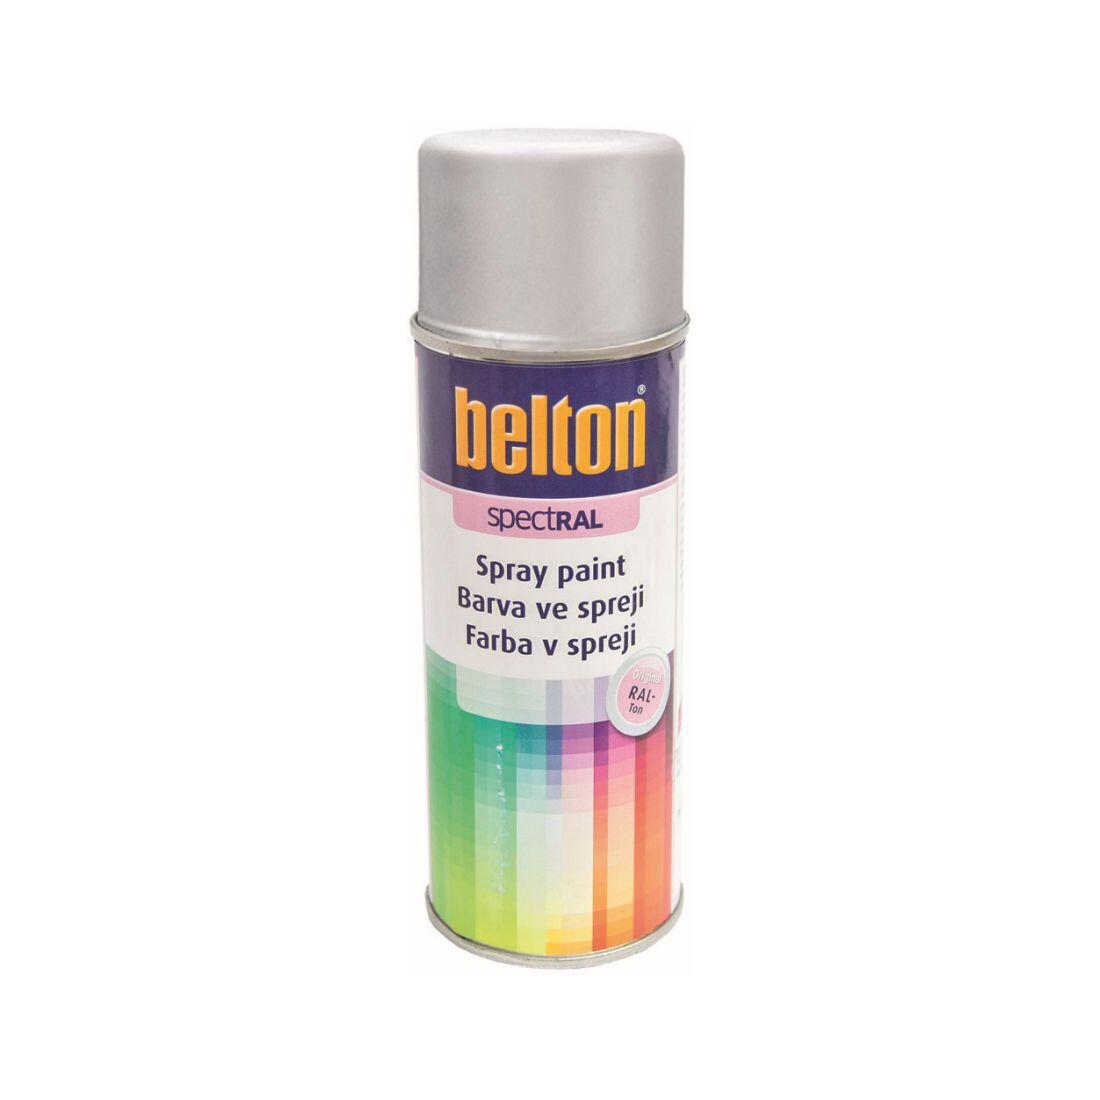 barva ve spreji BELTON RAL 9006, 400ml BÍ Al 0.31 Kg MAXMIX Sklad14 825383 10